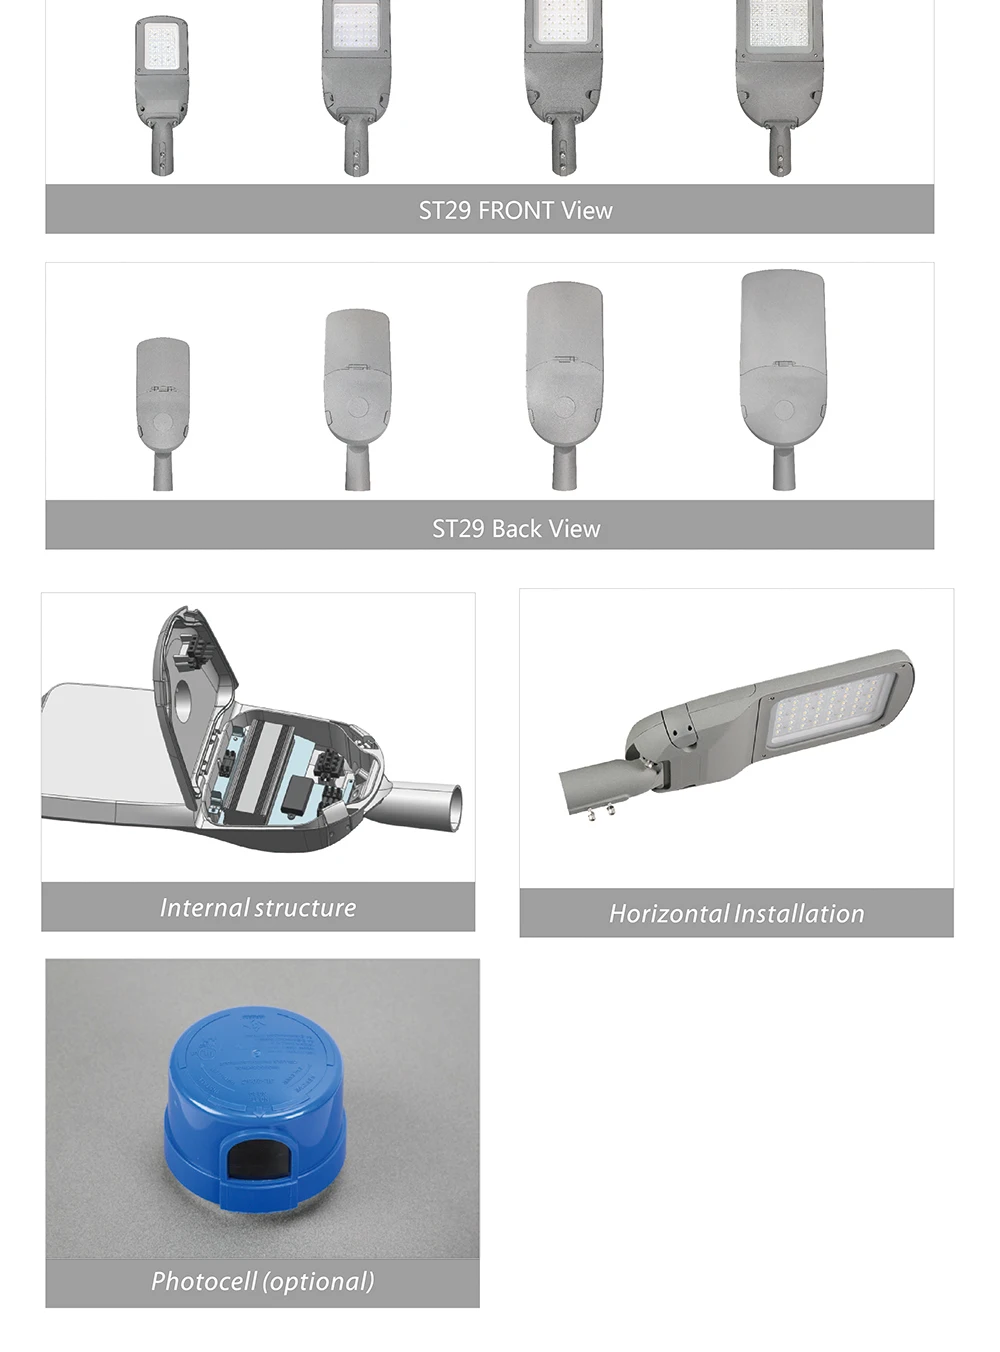 CHZ led street lighting best manufacturer for promotion-6